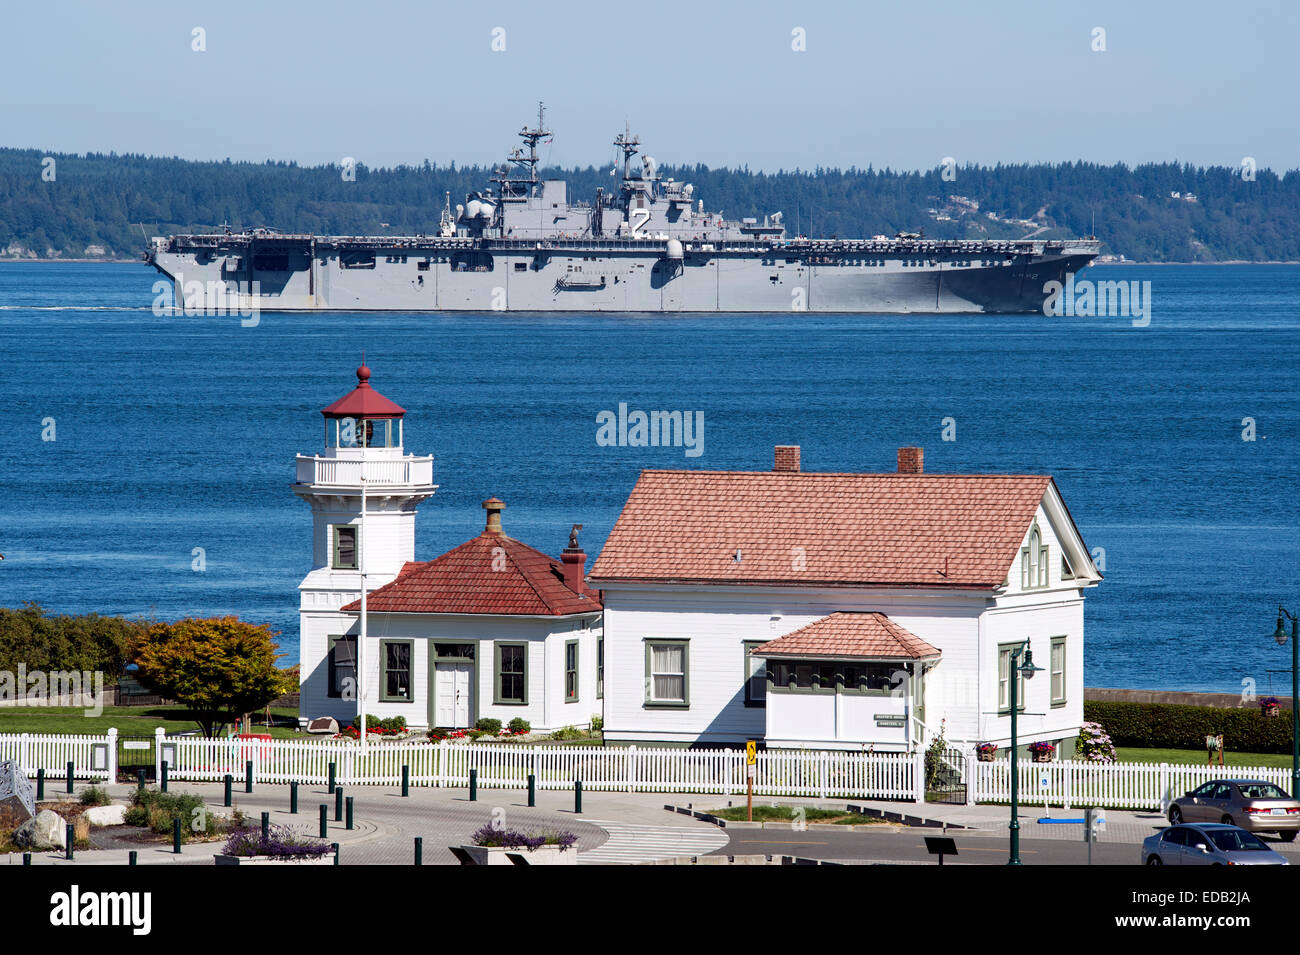 Wasp de l'US Navy de la classe de navire d'assaut amphibie USS Essex passe le Mukilteo phare sur sa façon de participer à la 65e semaine de la flotte Seafair Seattle le 28 juillet 2014 à Everett, Washington. Banque D'Images